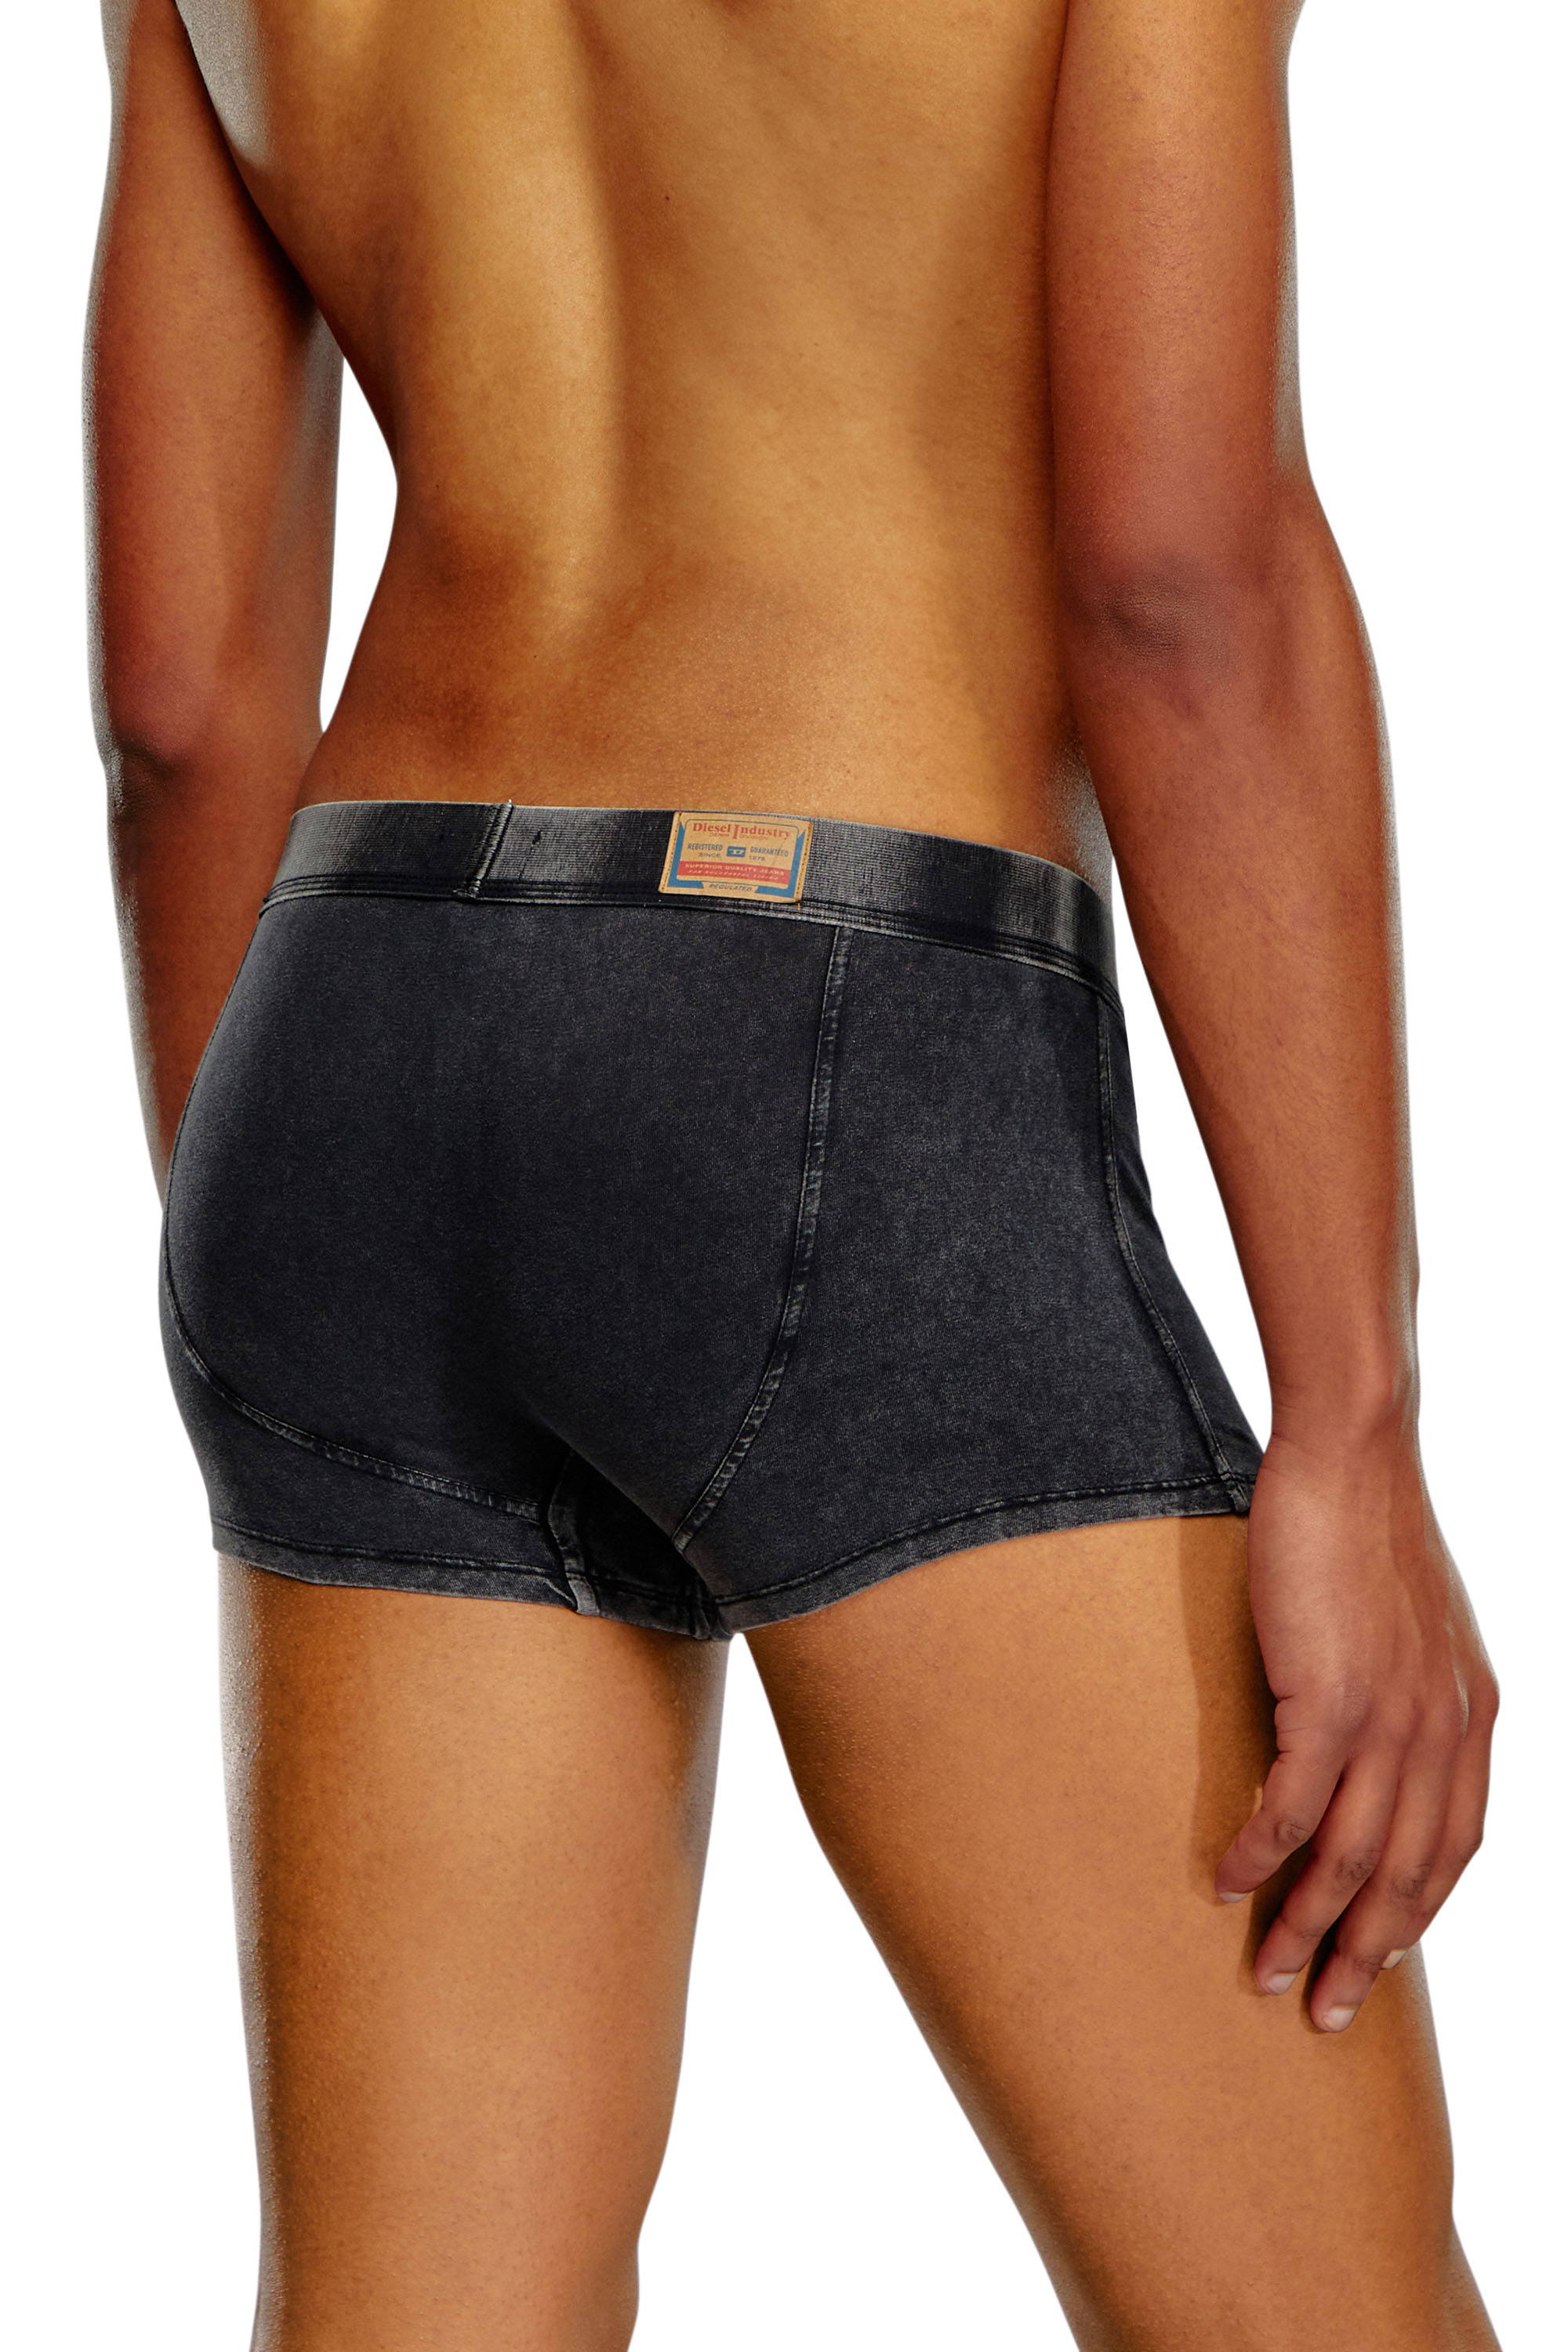 Top Drawers – New HOM & Diesel Underwear – Underwear News Briefs